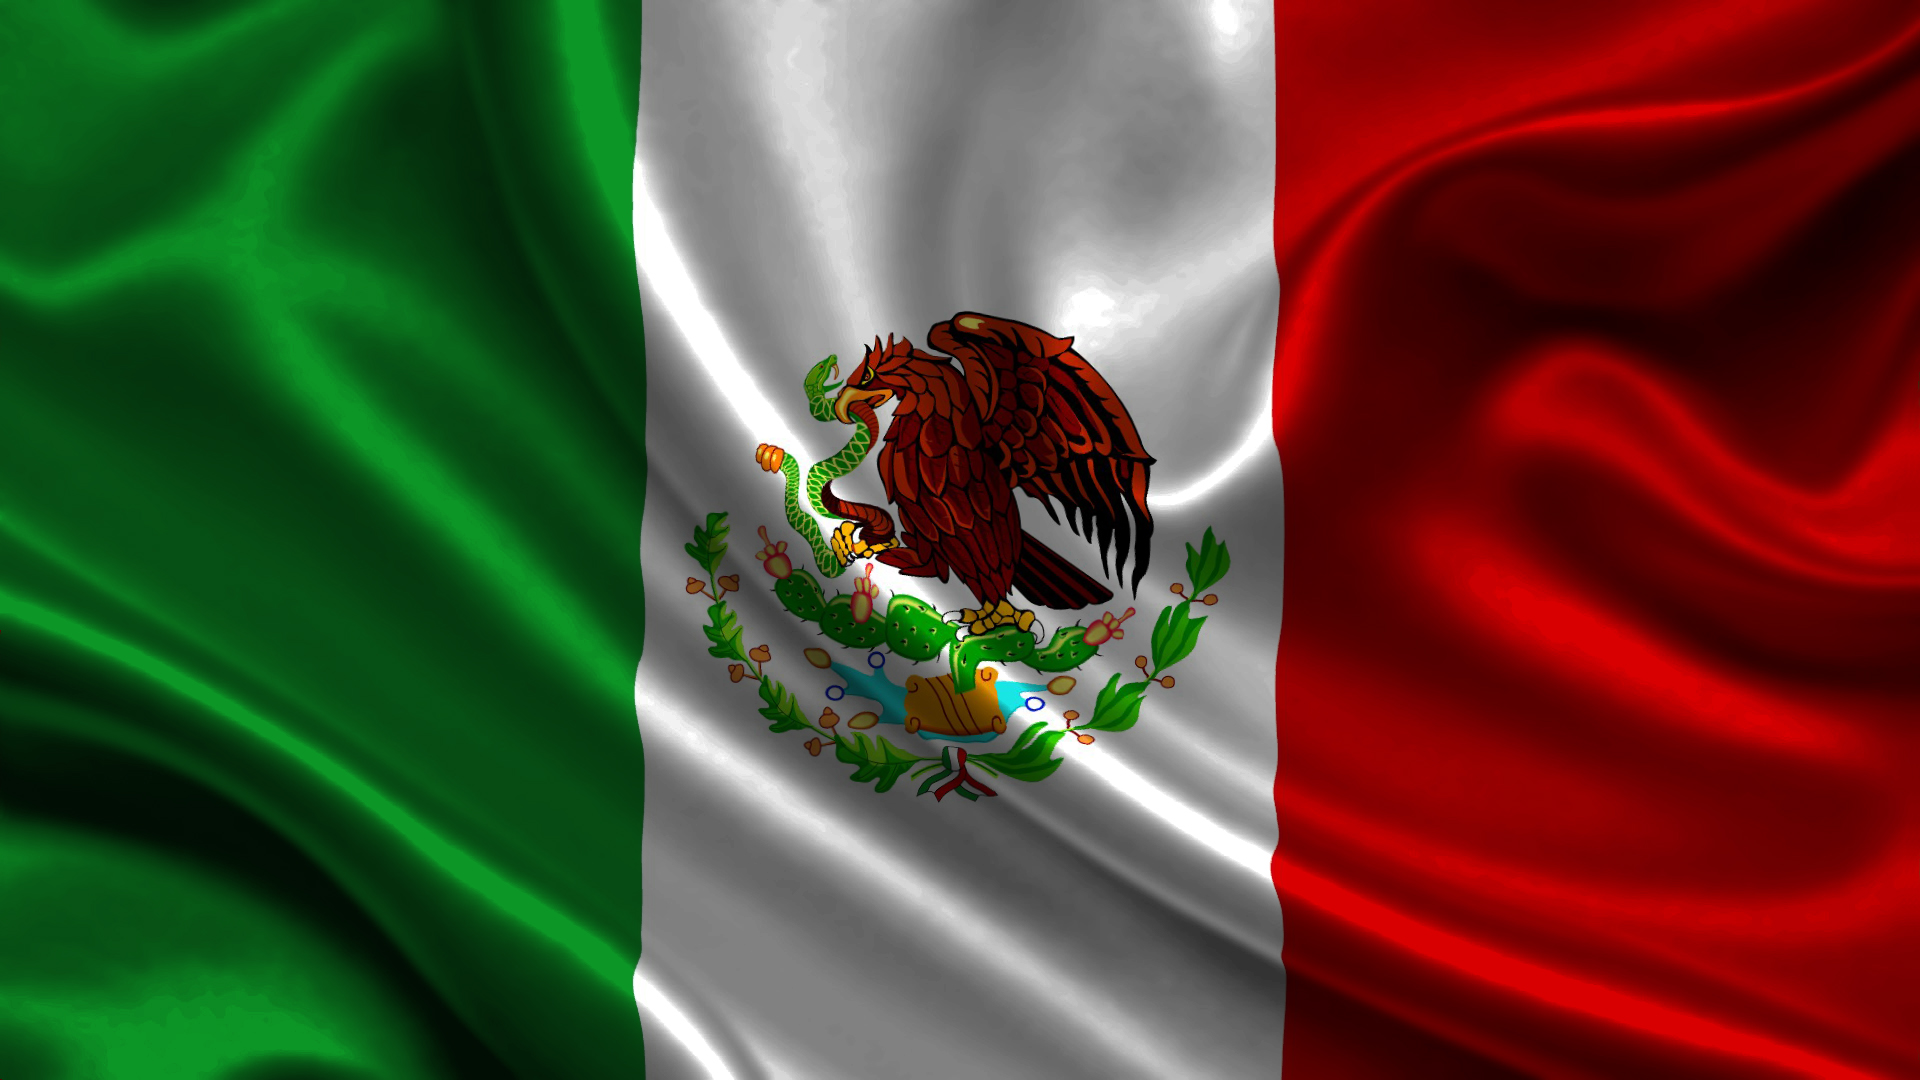 Historia y curiosidades de la bandera de México - Astrolabio